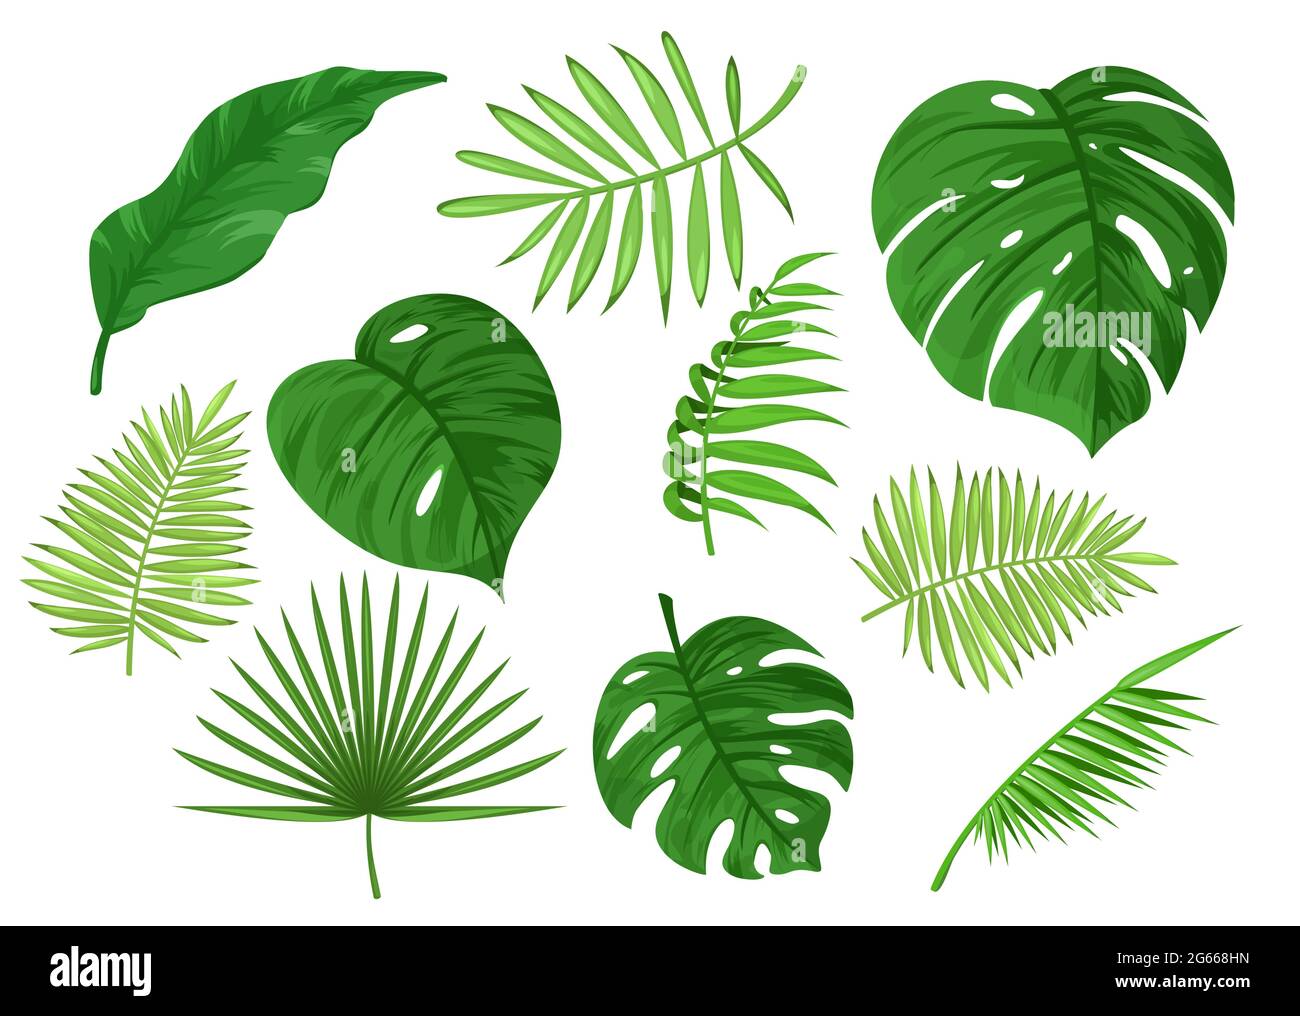 Tropisch geschnitzt und fest grün auseinander Blätter Cartoon Vektor Illustration Set Stock Vektor